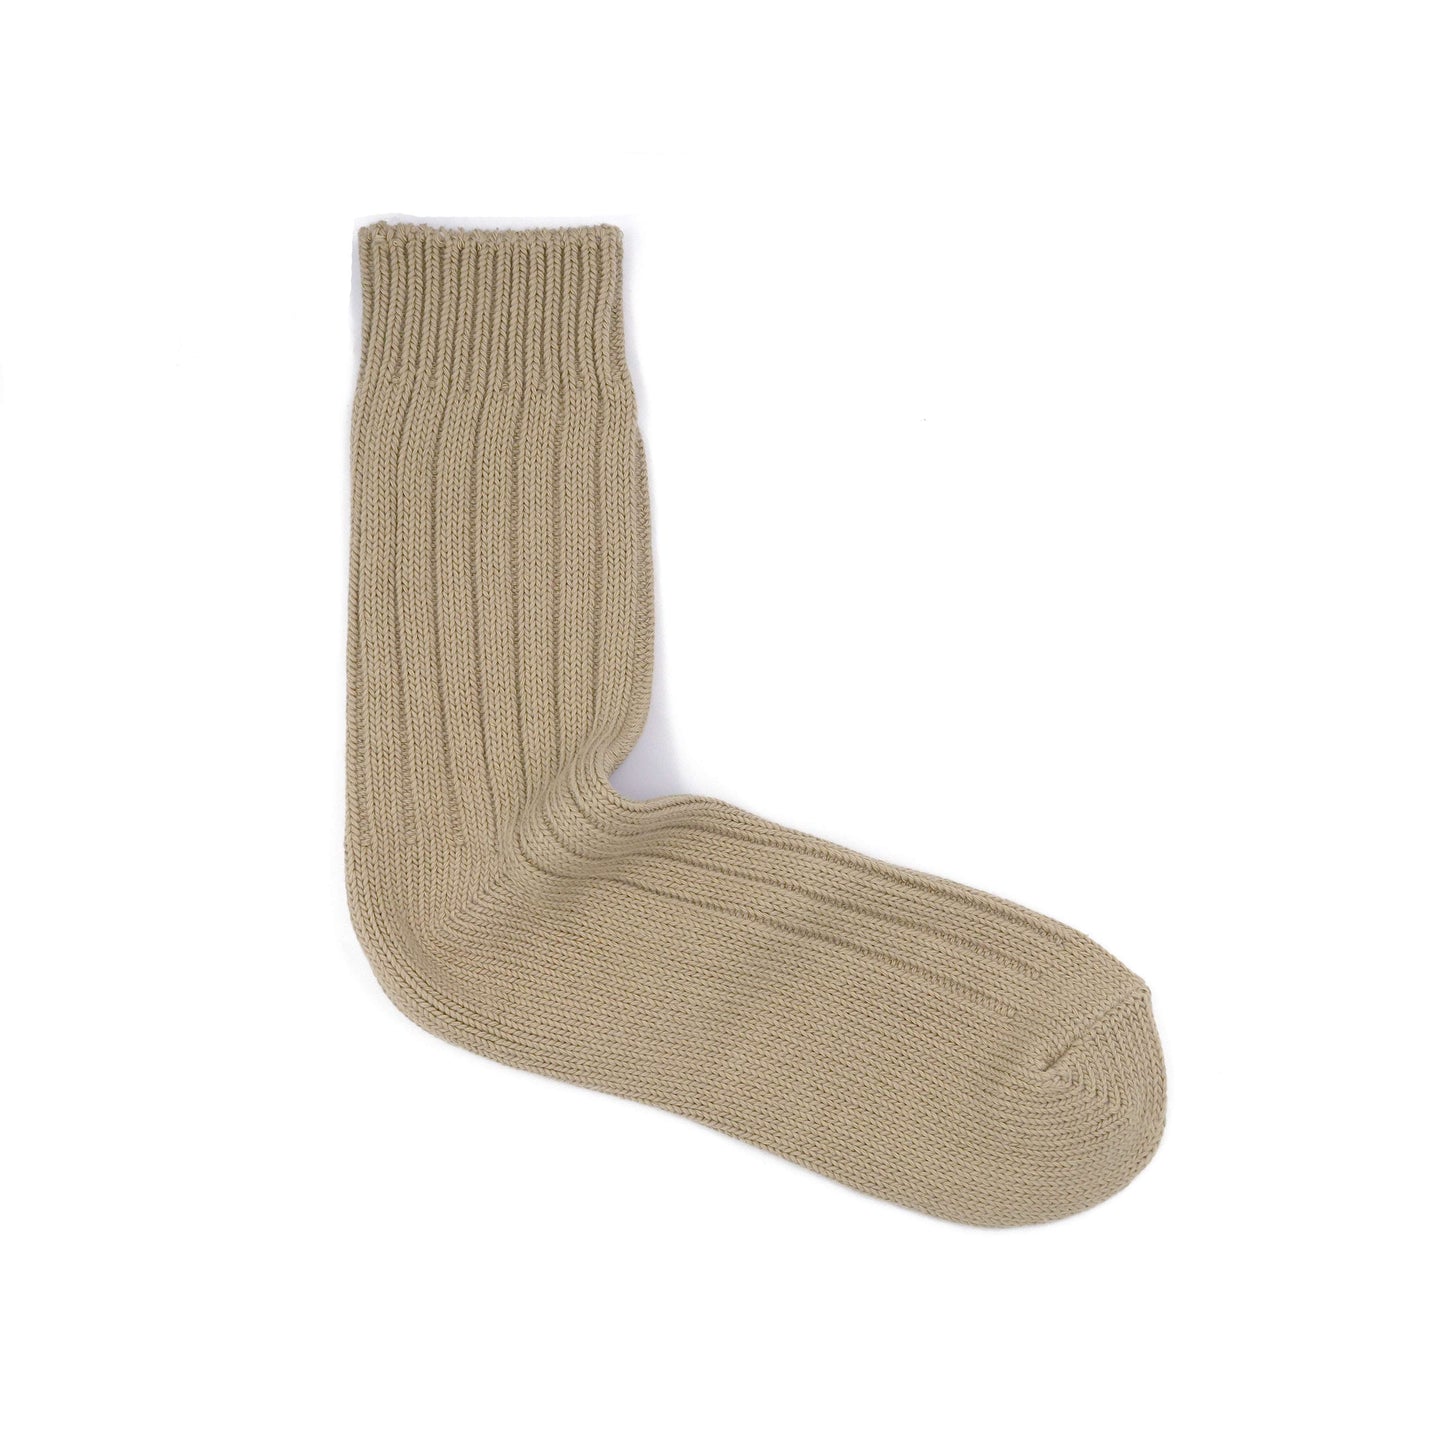 Alfred knitted socks camel color | Comfysocks